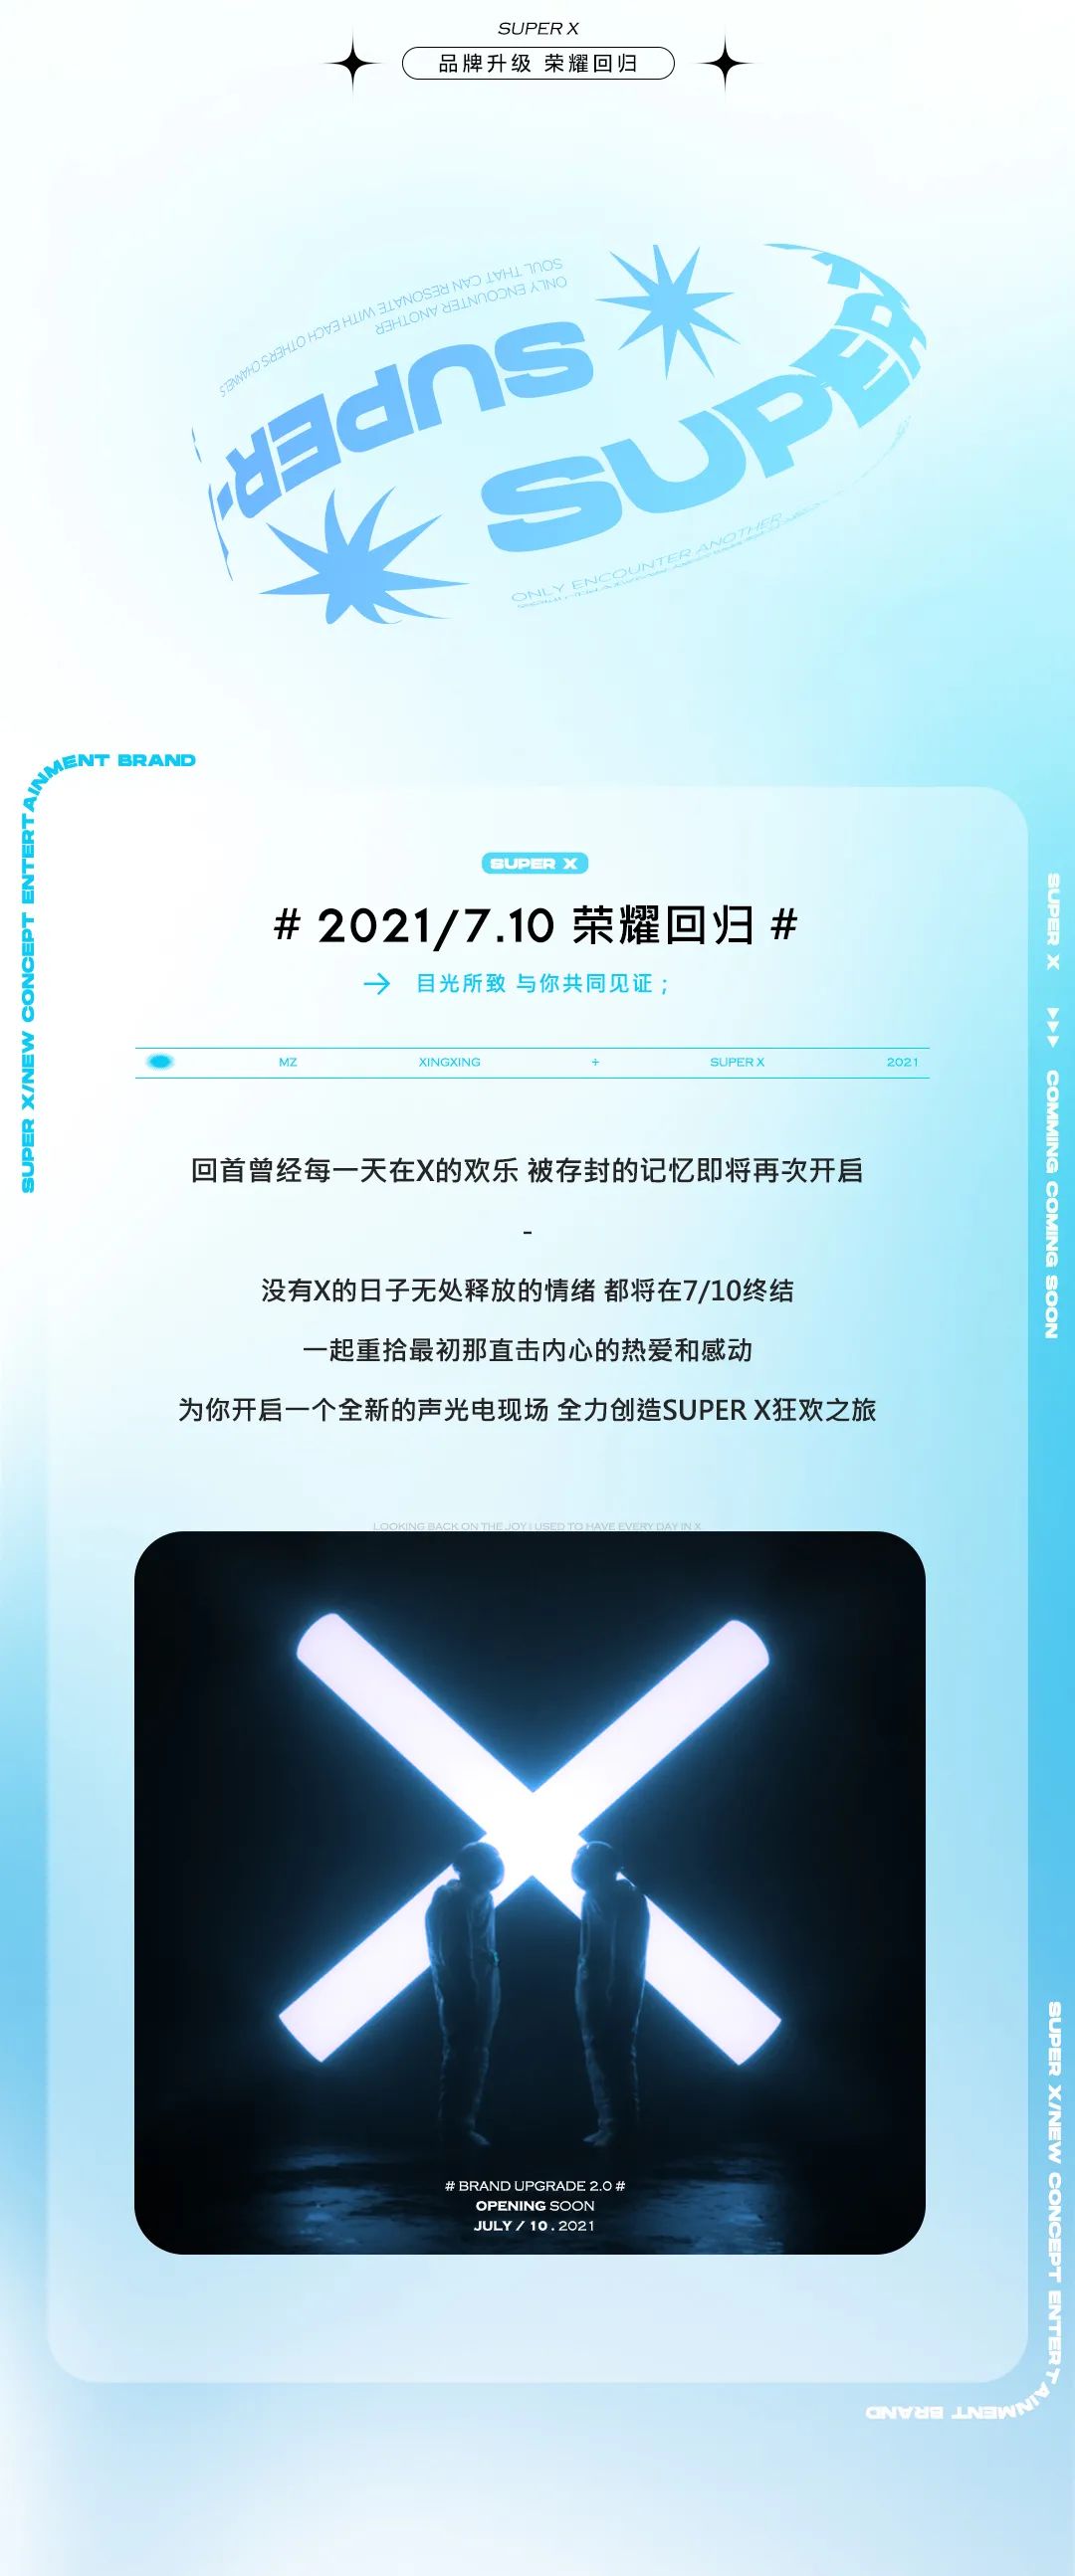 7.10 SUPER X | 品牌升级 荣耀回归-兴宁X·PARTY